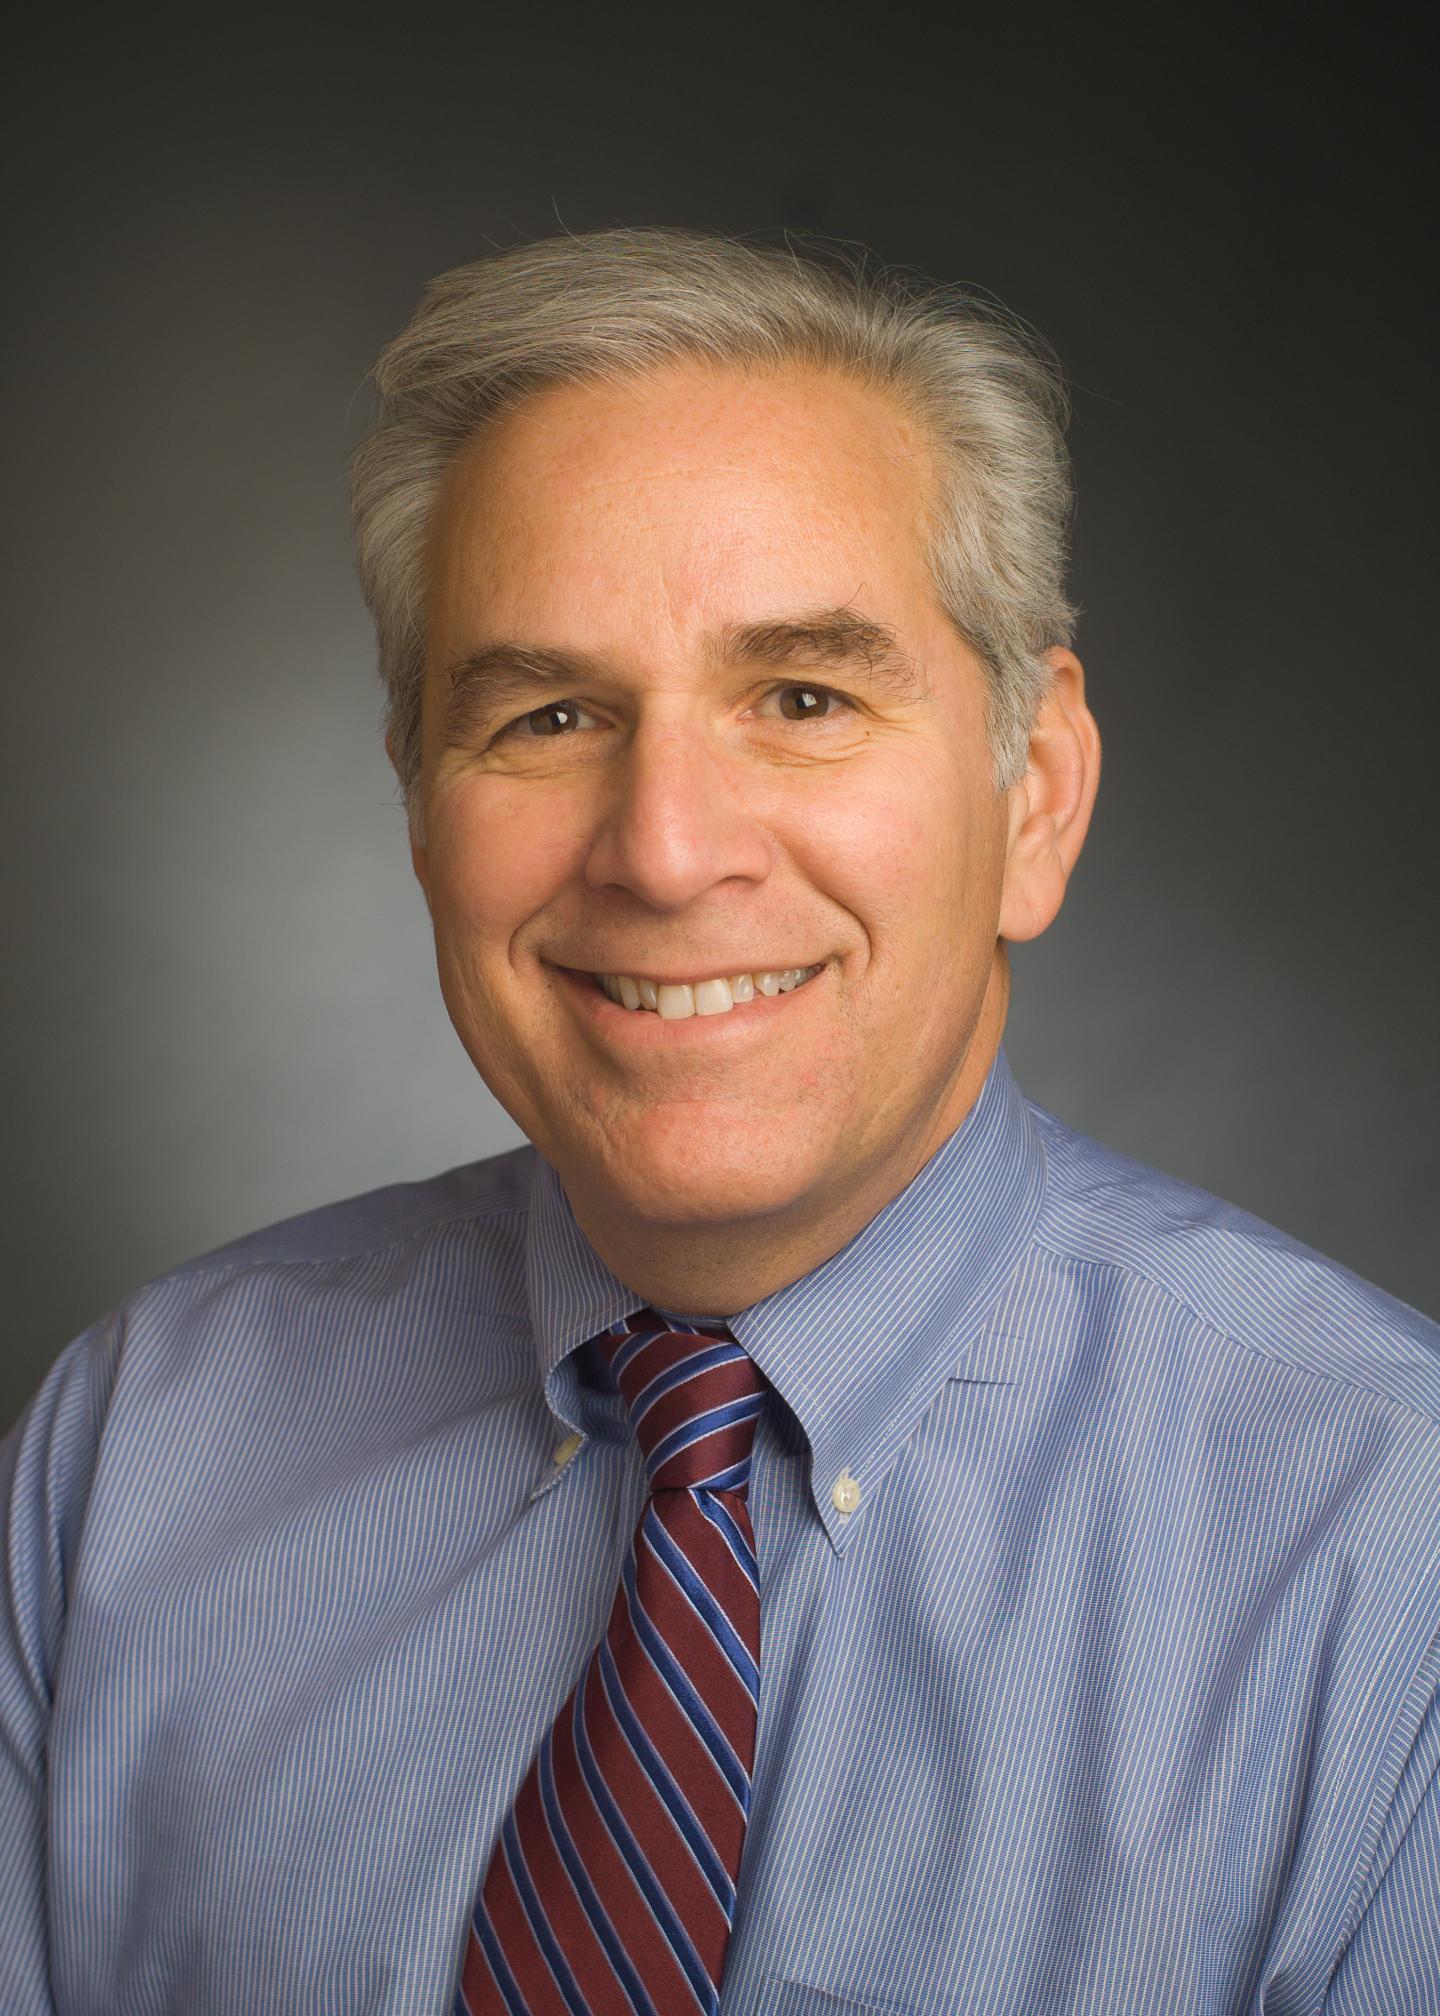 Dr. Richard Goldstein, Director of Robert’s Program